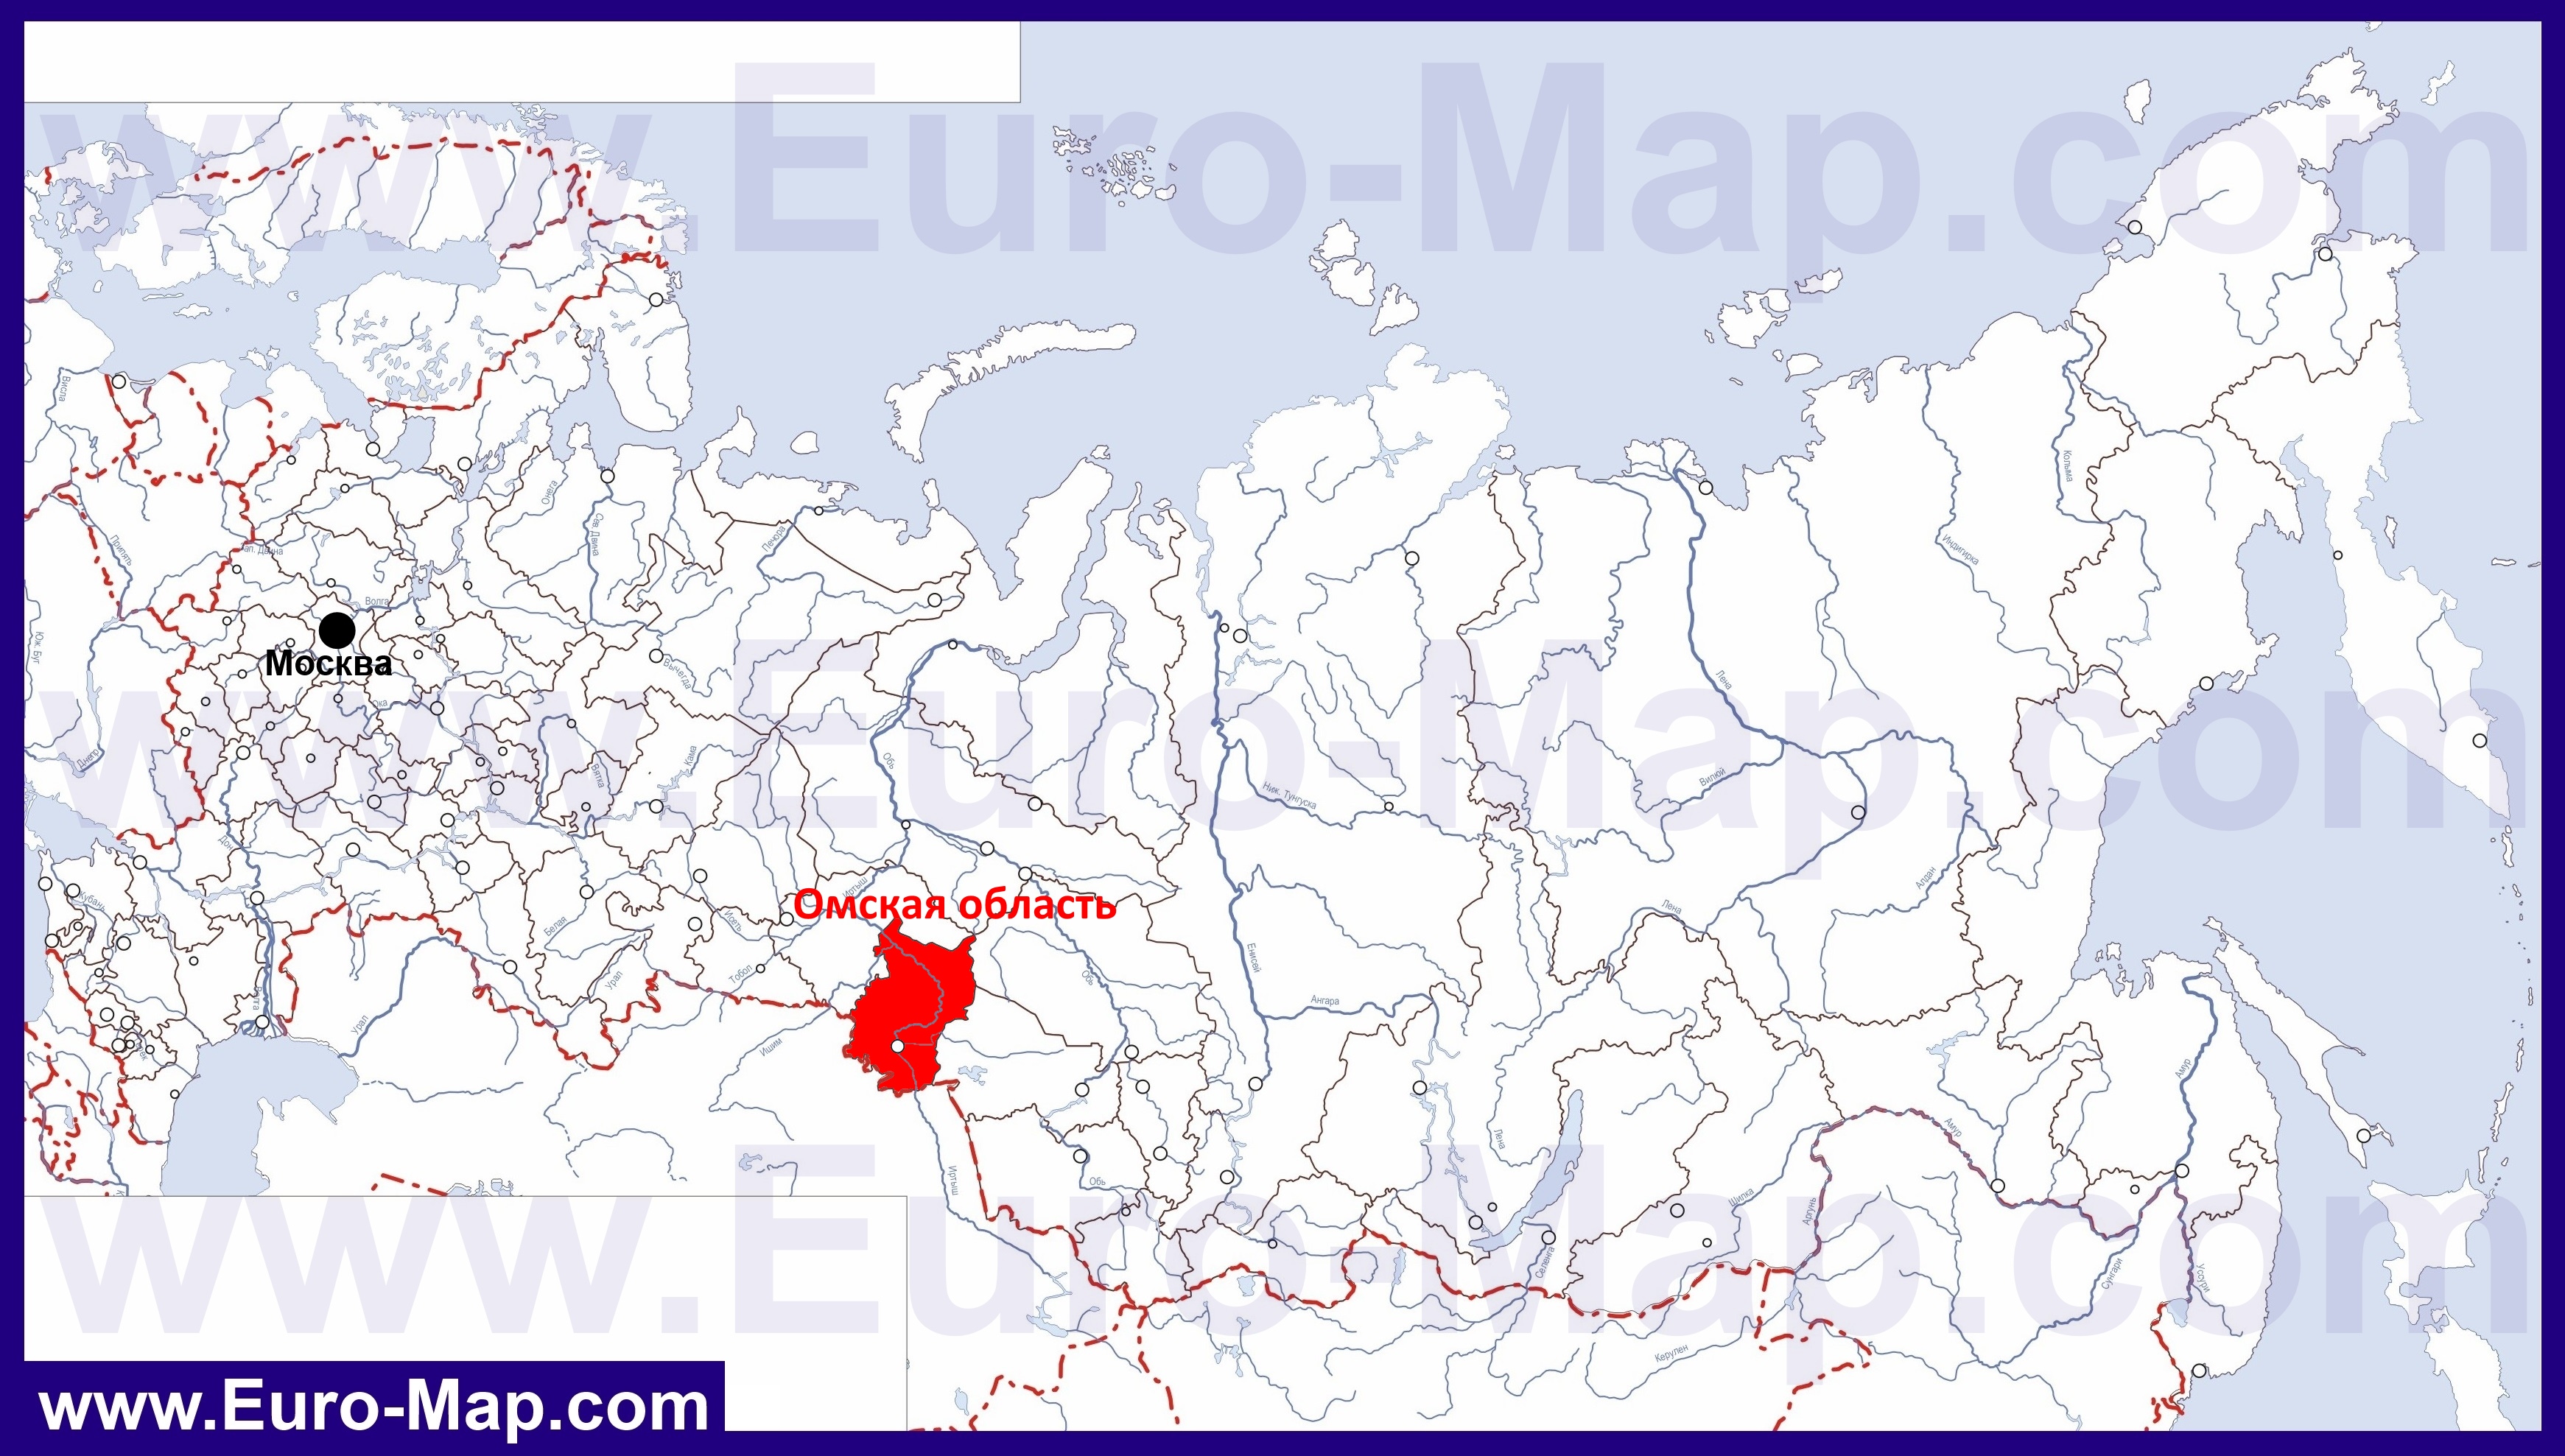 Покажи на карте где находится омск. Омск где расположен на карте России. Омская область на карте России. Орская область на карте Росси.